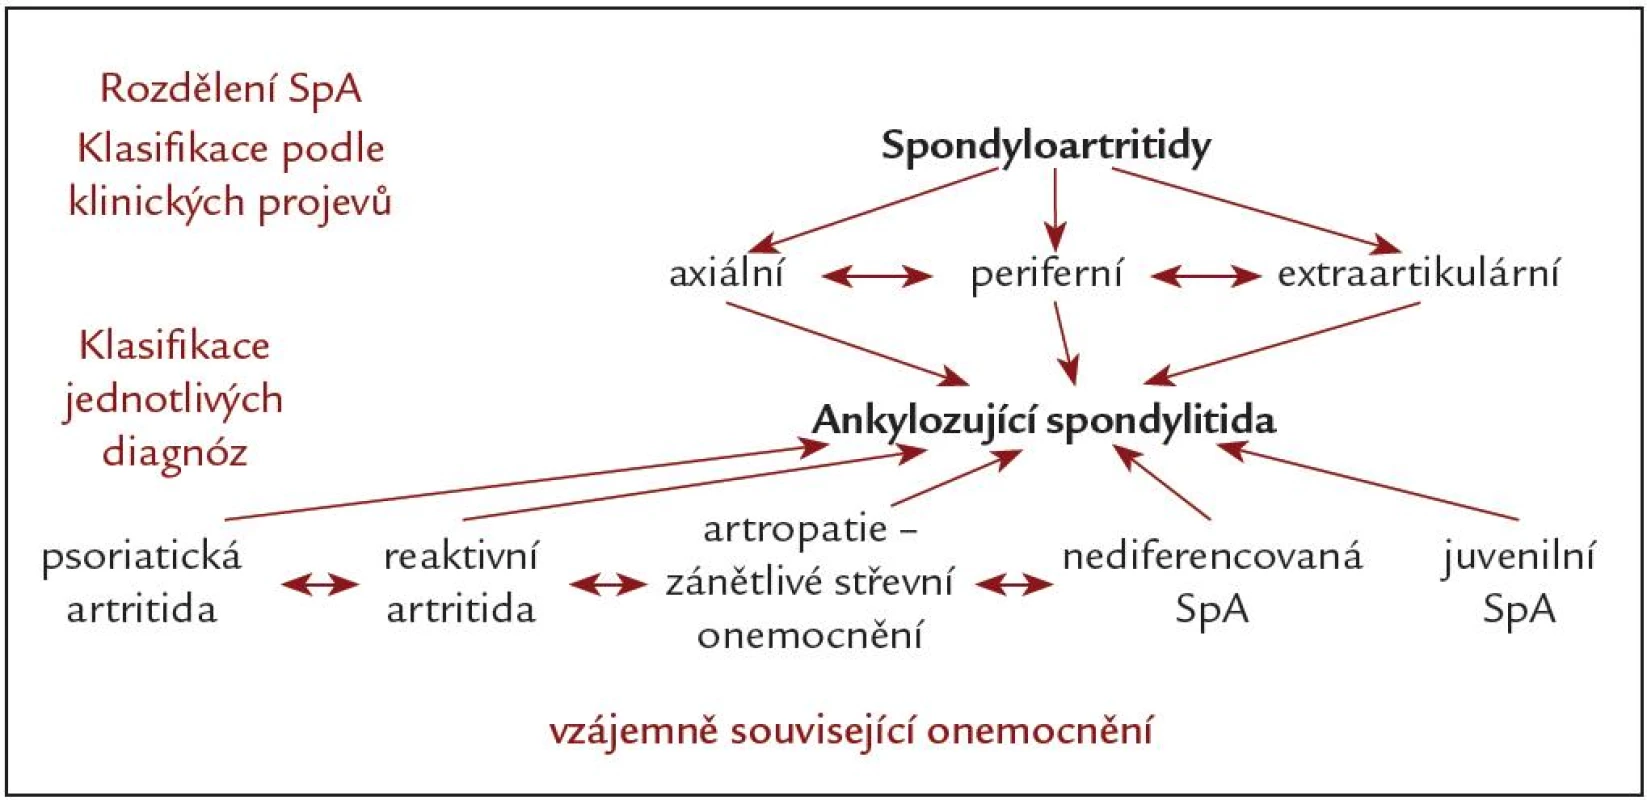 Spondyloartritidy.